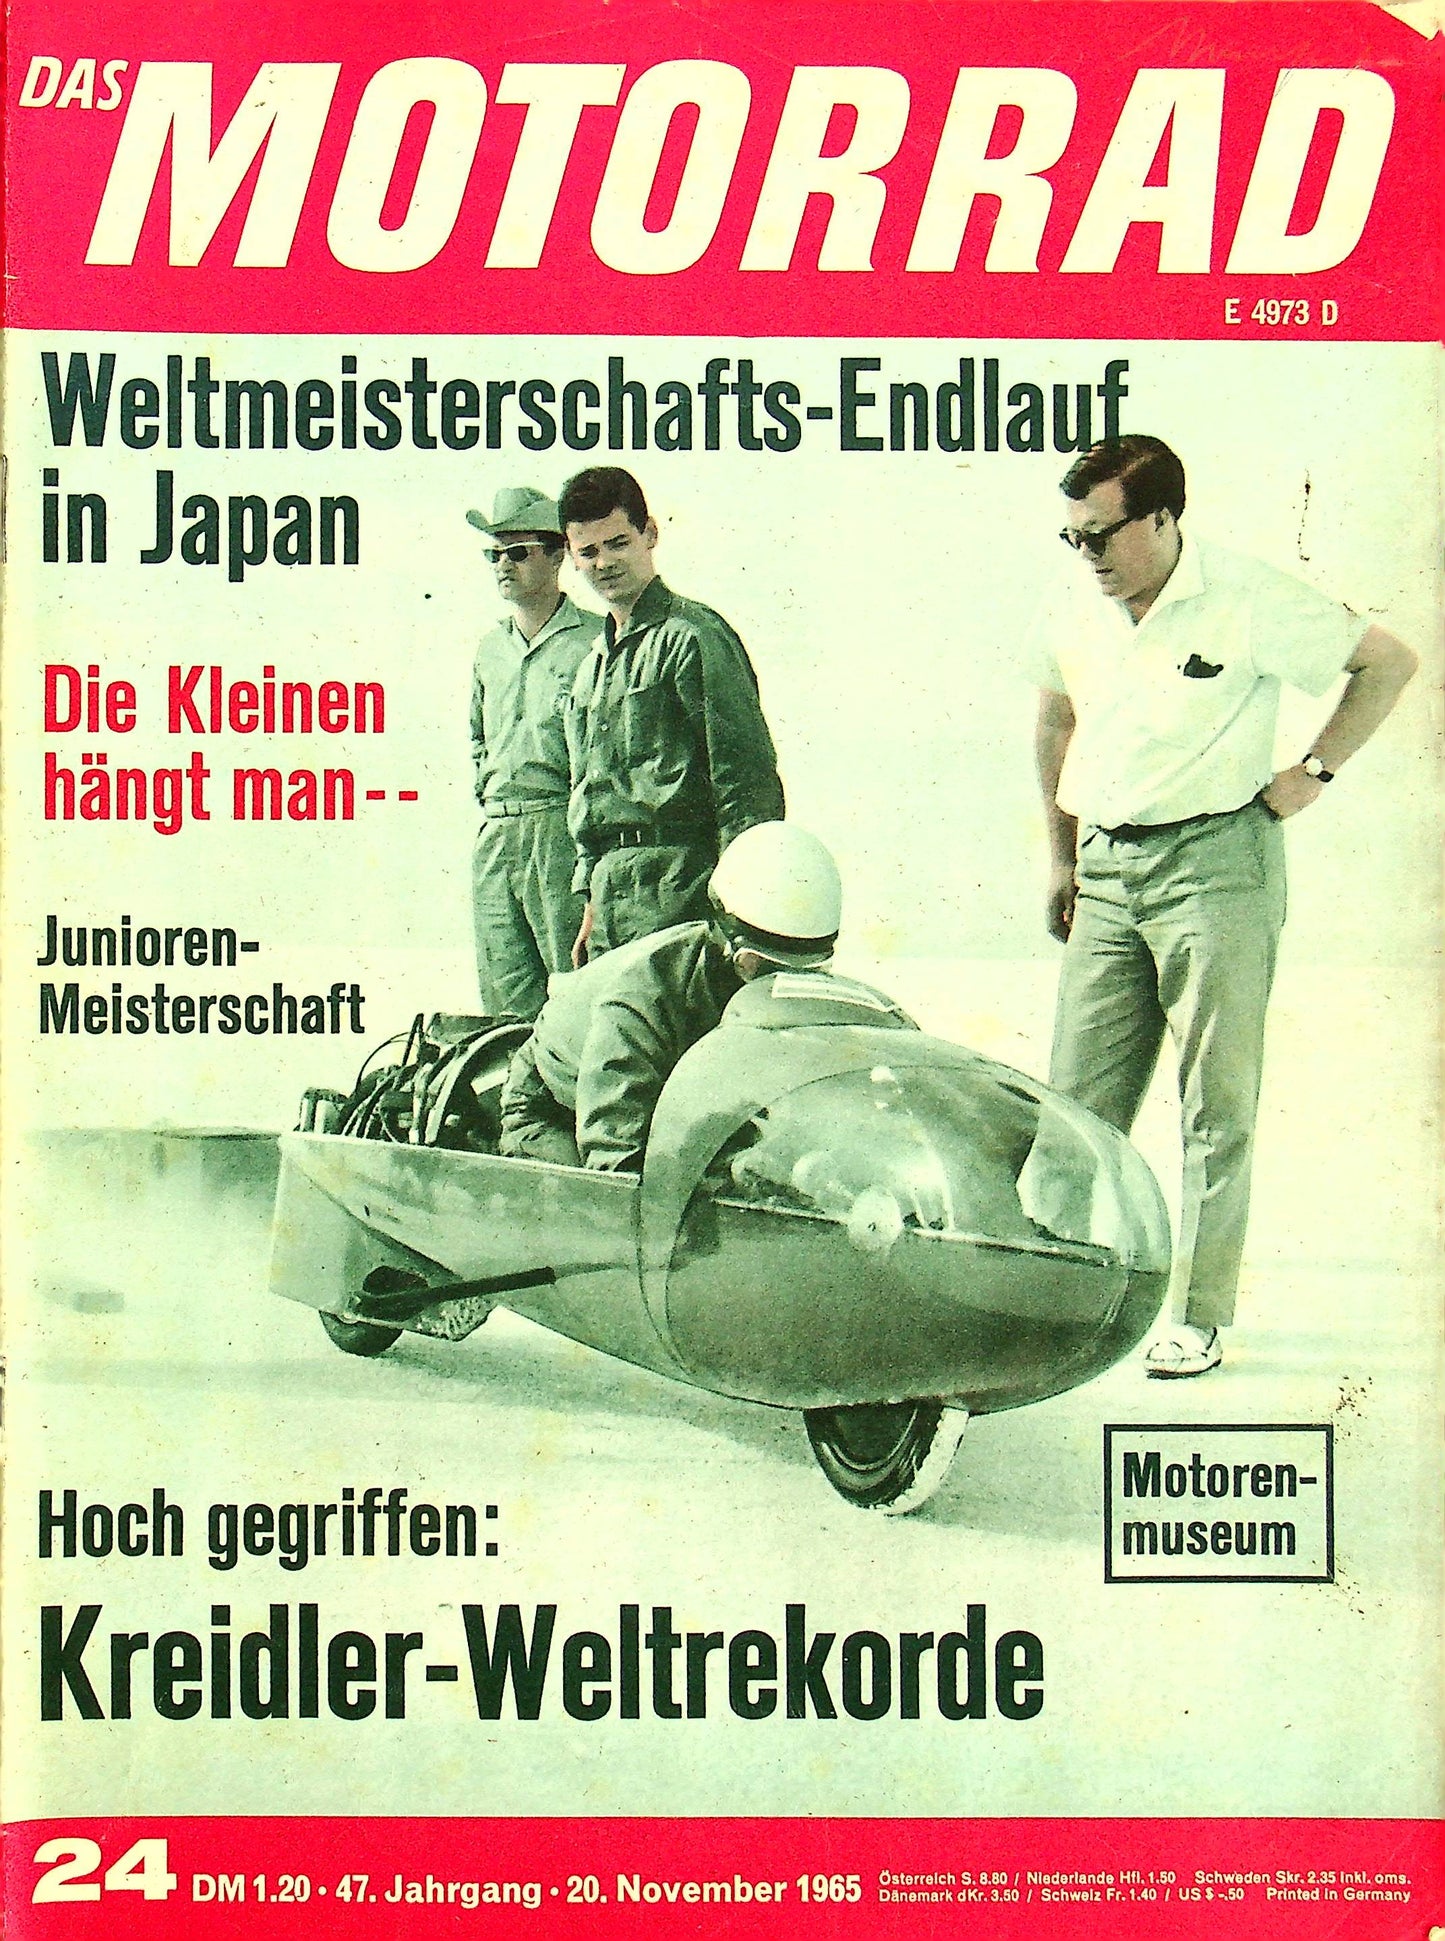 Motorrad 24/1965